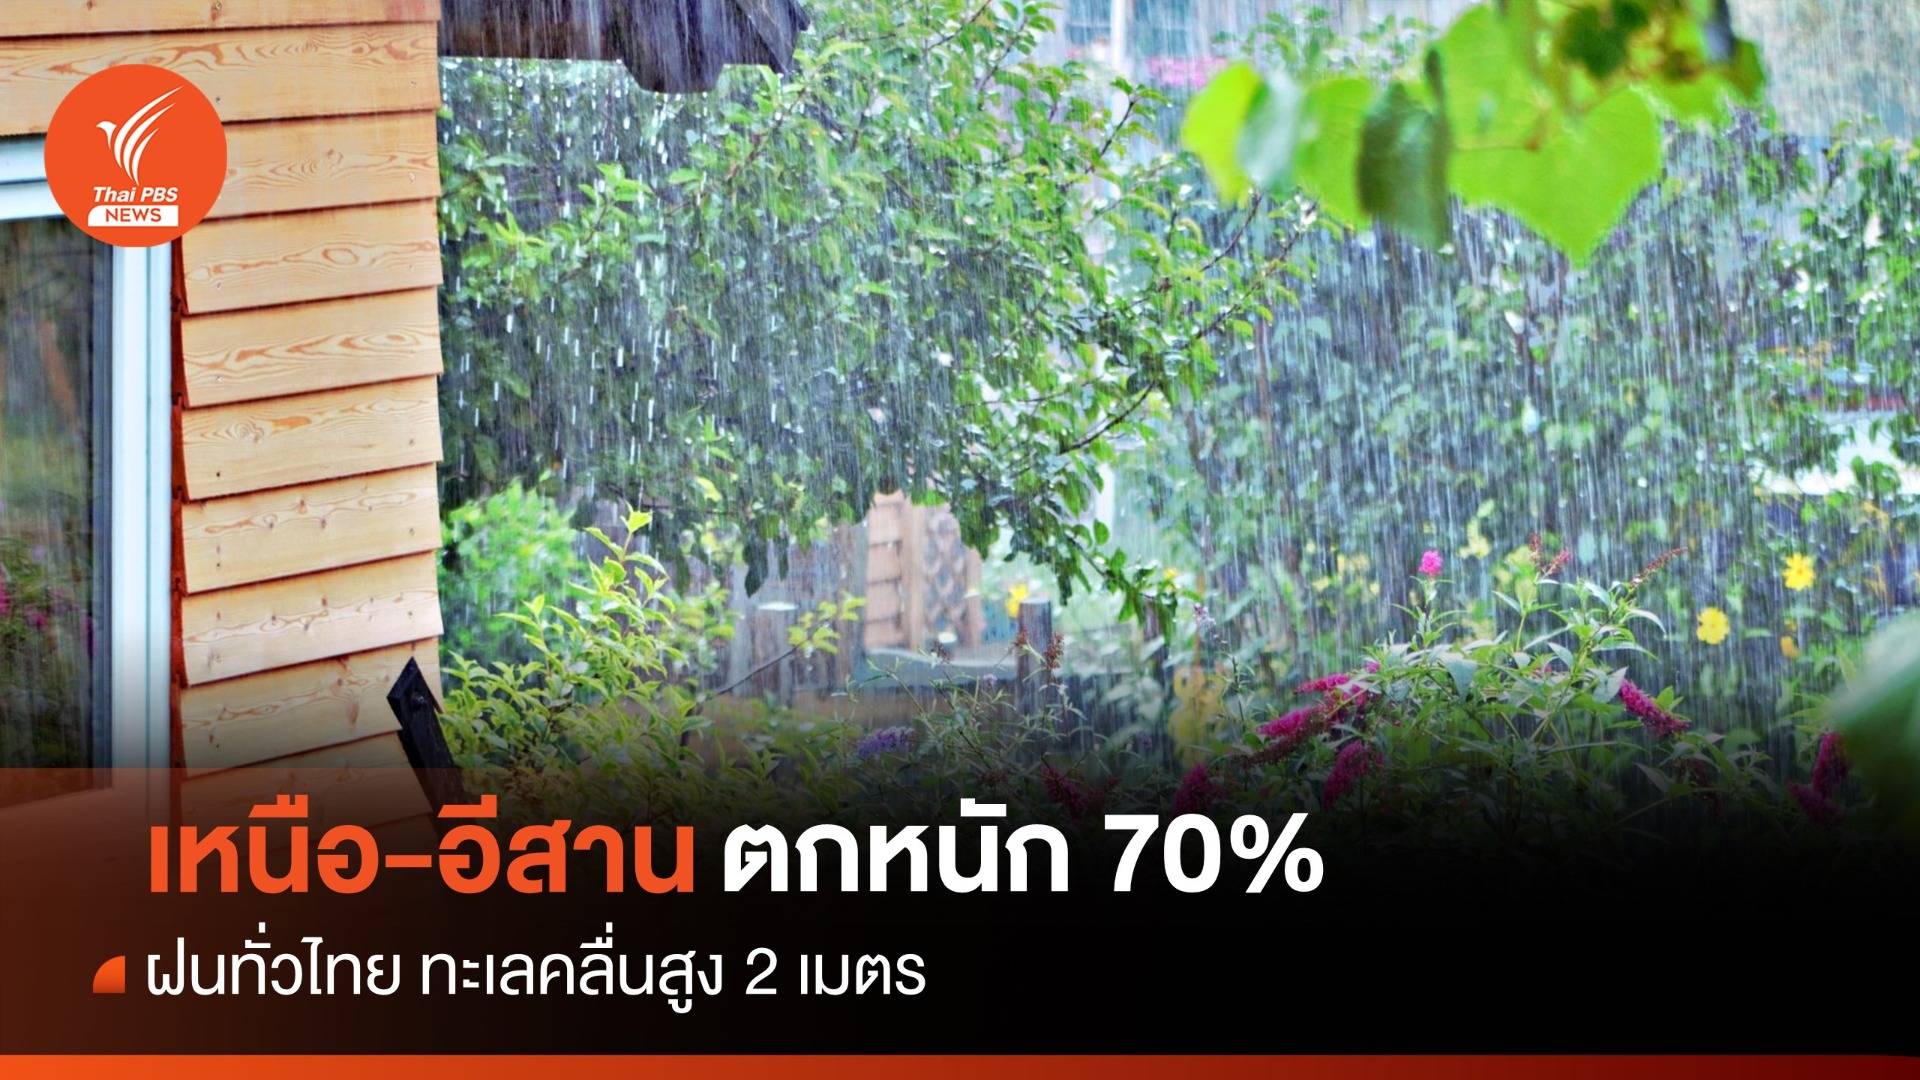 สภาพอากาศวันนี้ ฝนเพิ่มทั่วประเทศ เหนือ-อีสานตกหนัก 70%